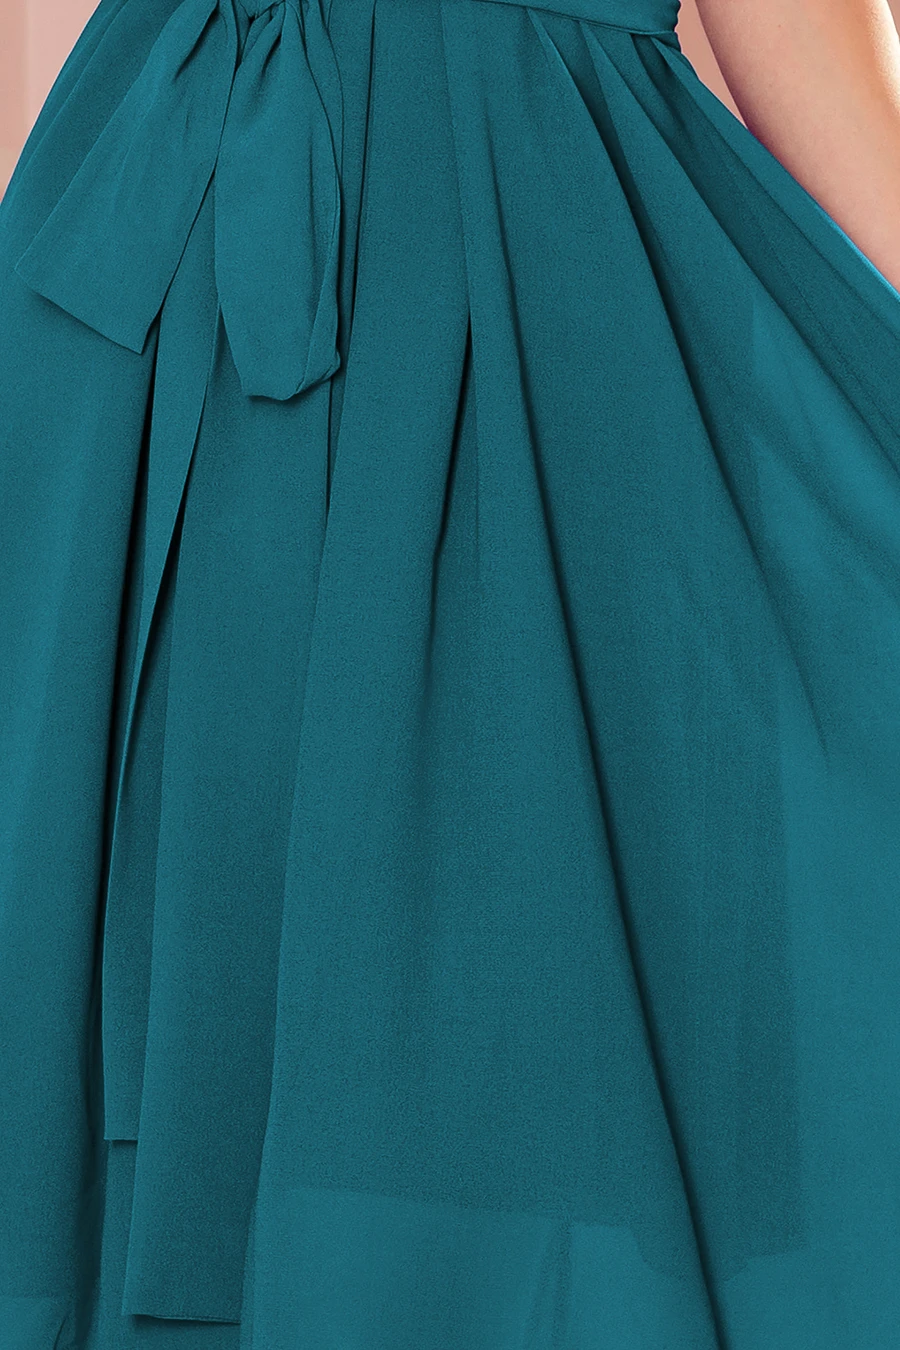 350-6 ALIZEE - szyfonowa sukienka z wiązaniem - MORSKA